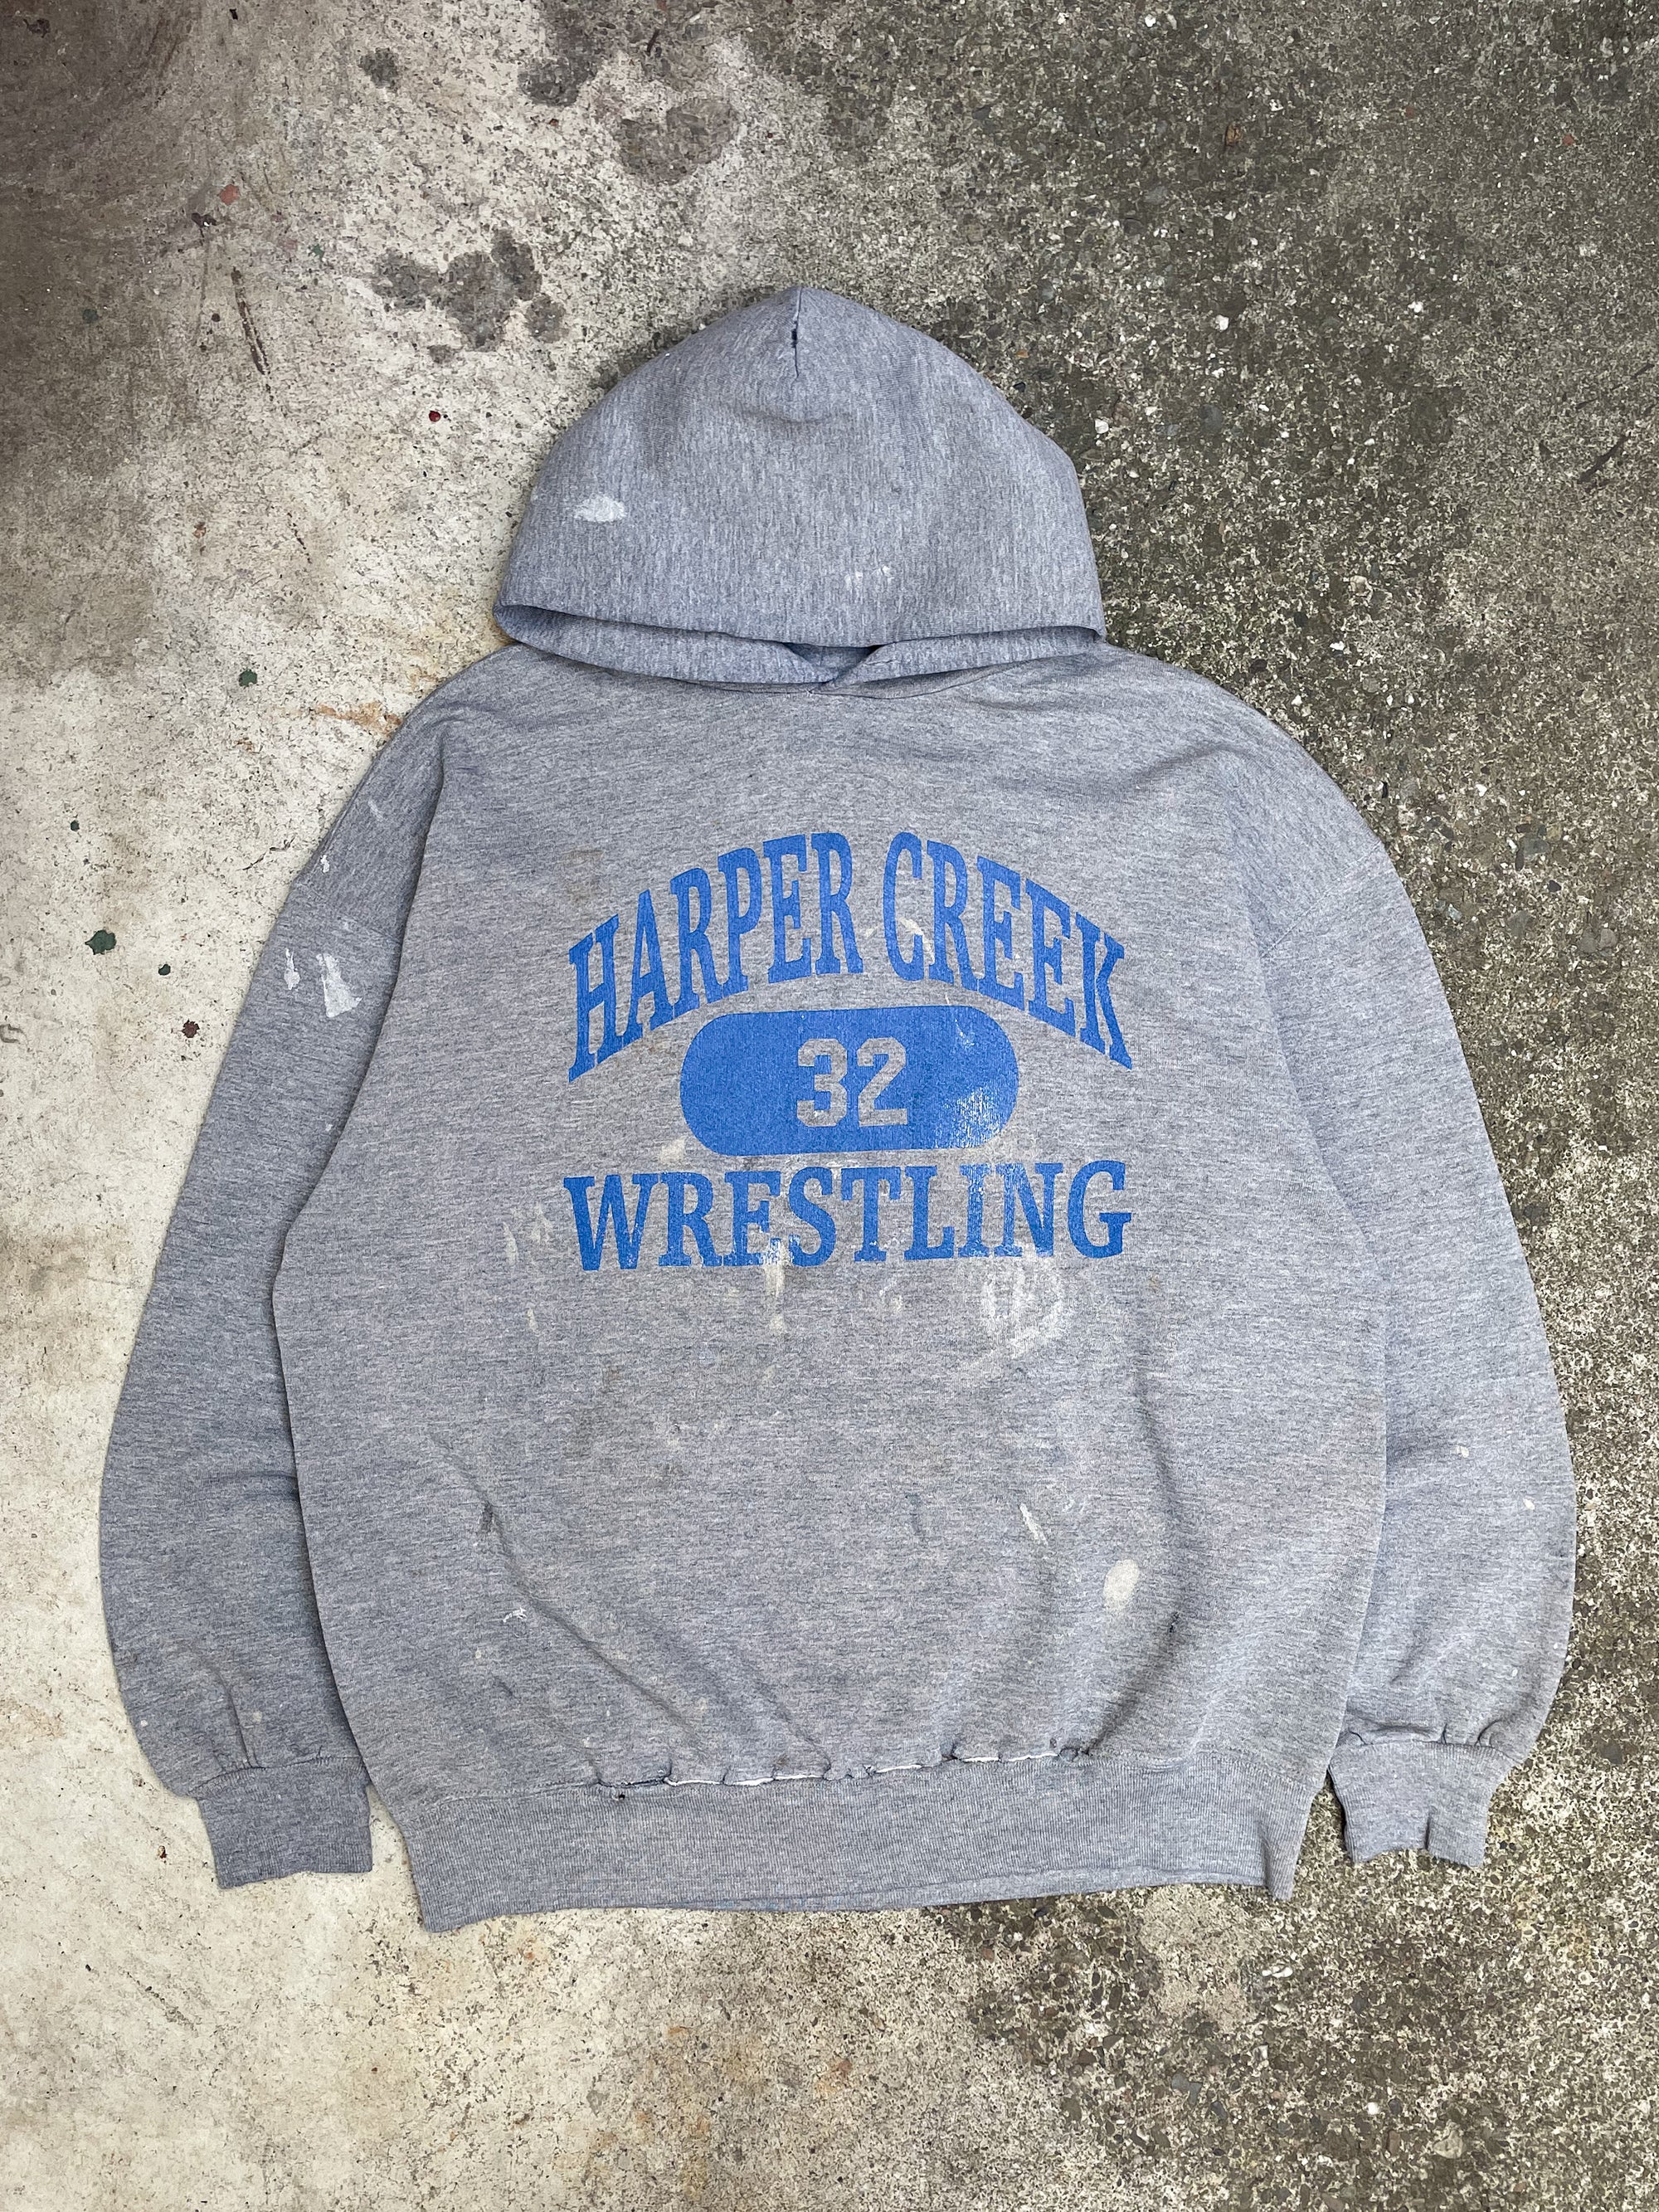 1990s Russell “Harper Creek Wrestling” Painted Hoodie (XL)